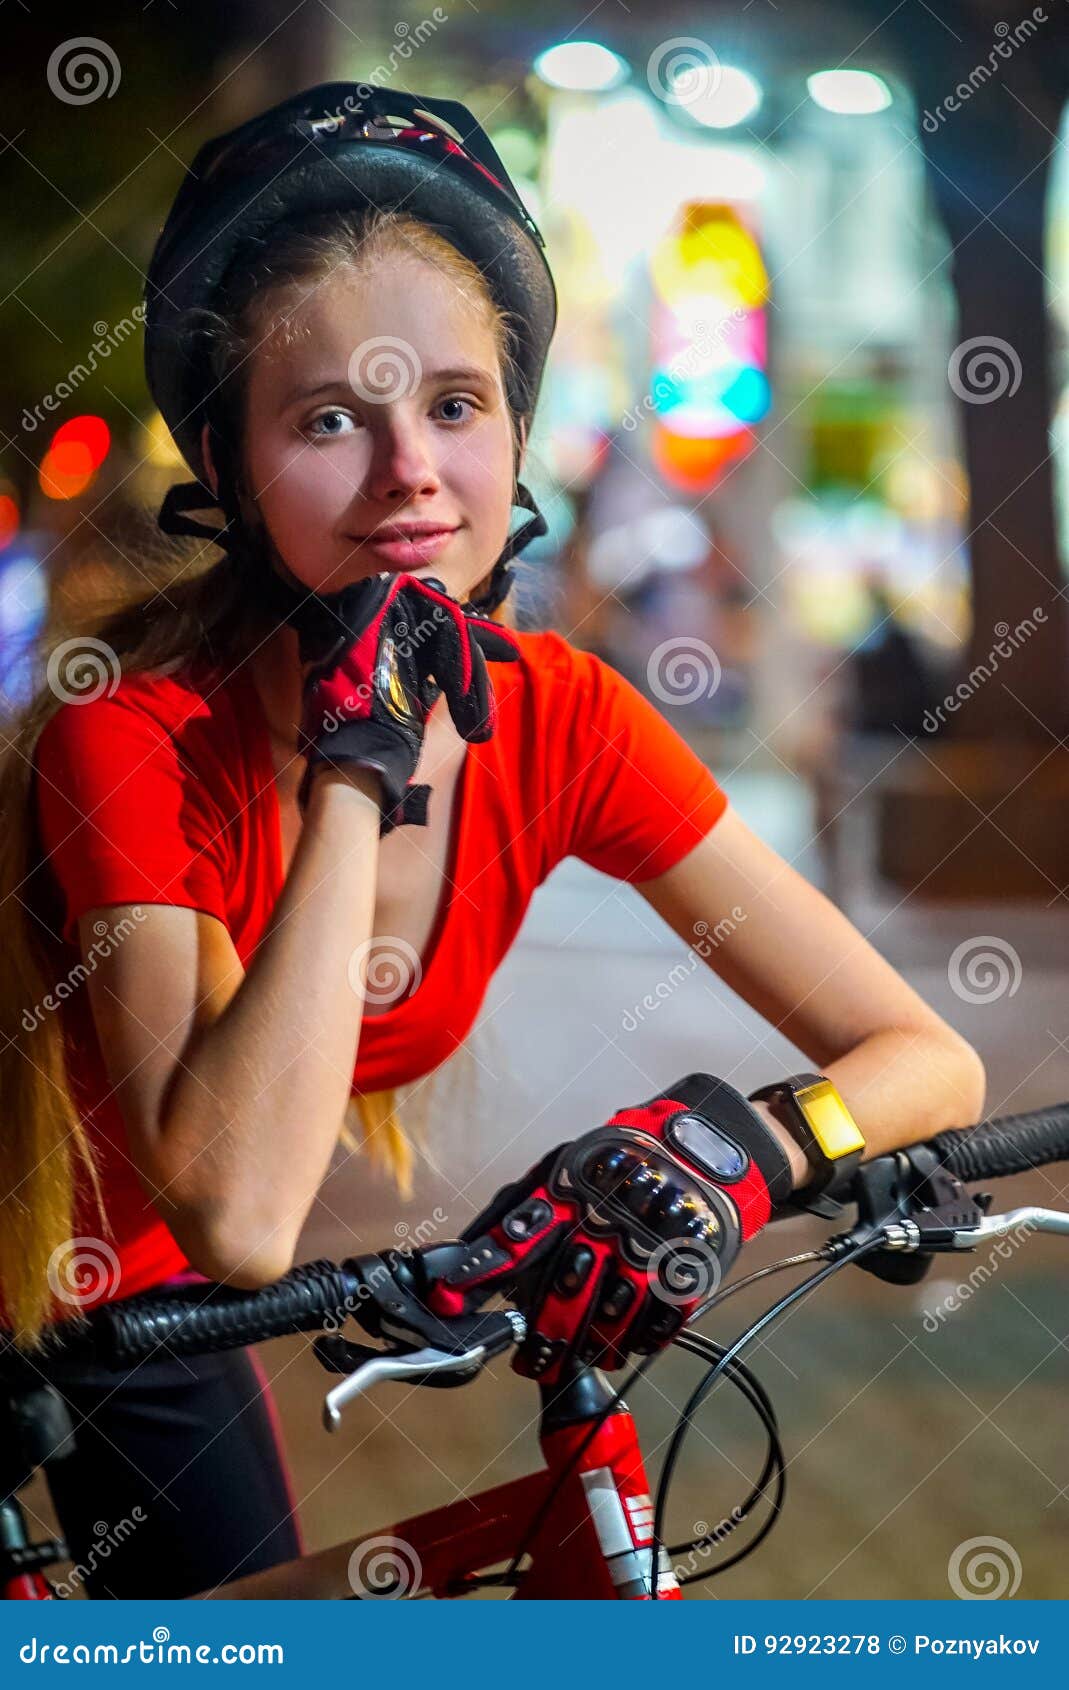 骑自行车自行车骑士女孩佩带的自行车盔甲 室外夜画象 库存照片 图片 包括有 布琼布拉 夜生活 女孩 92923278